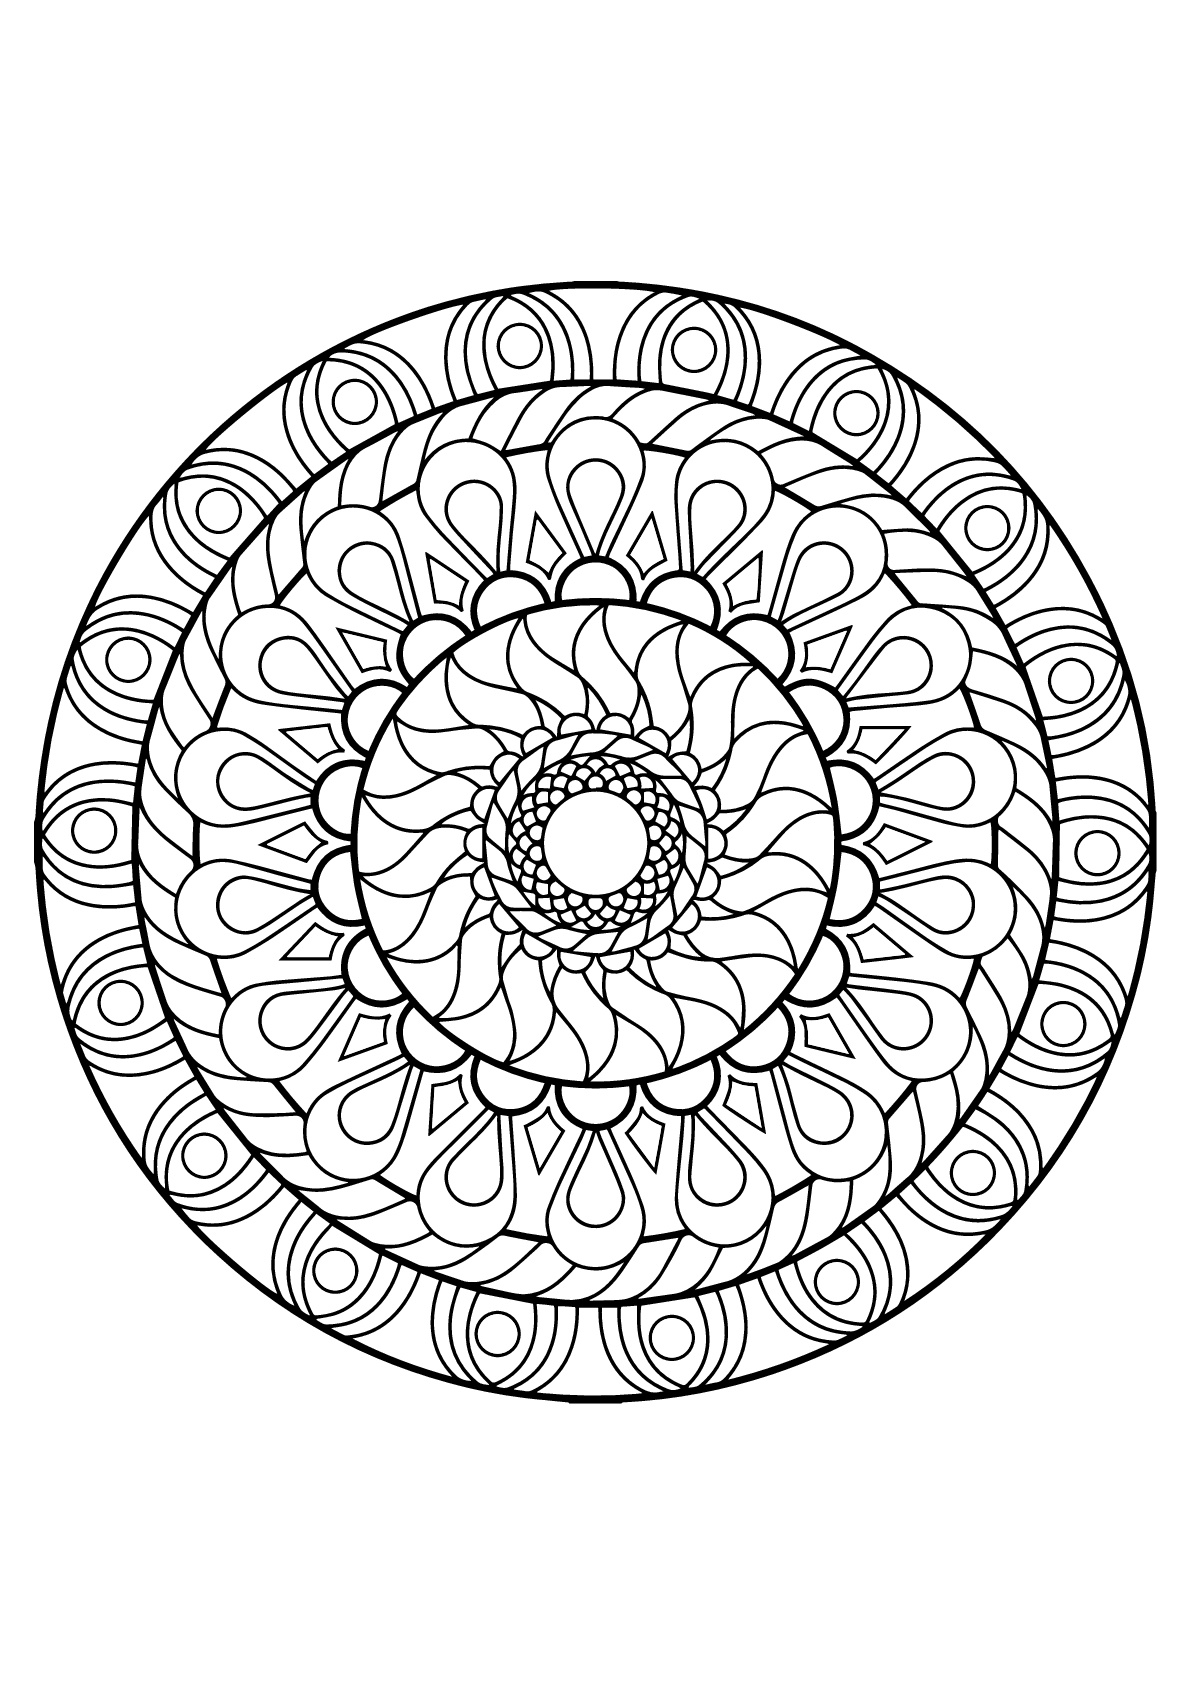 Mandala com vários padrões do Livro de colorir grátis para adultos